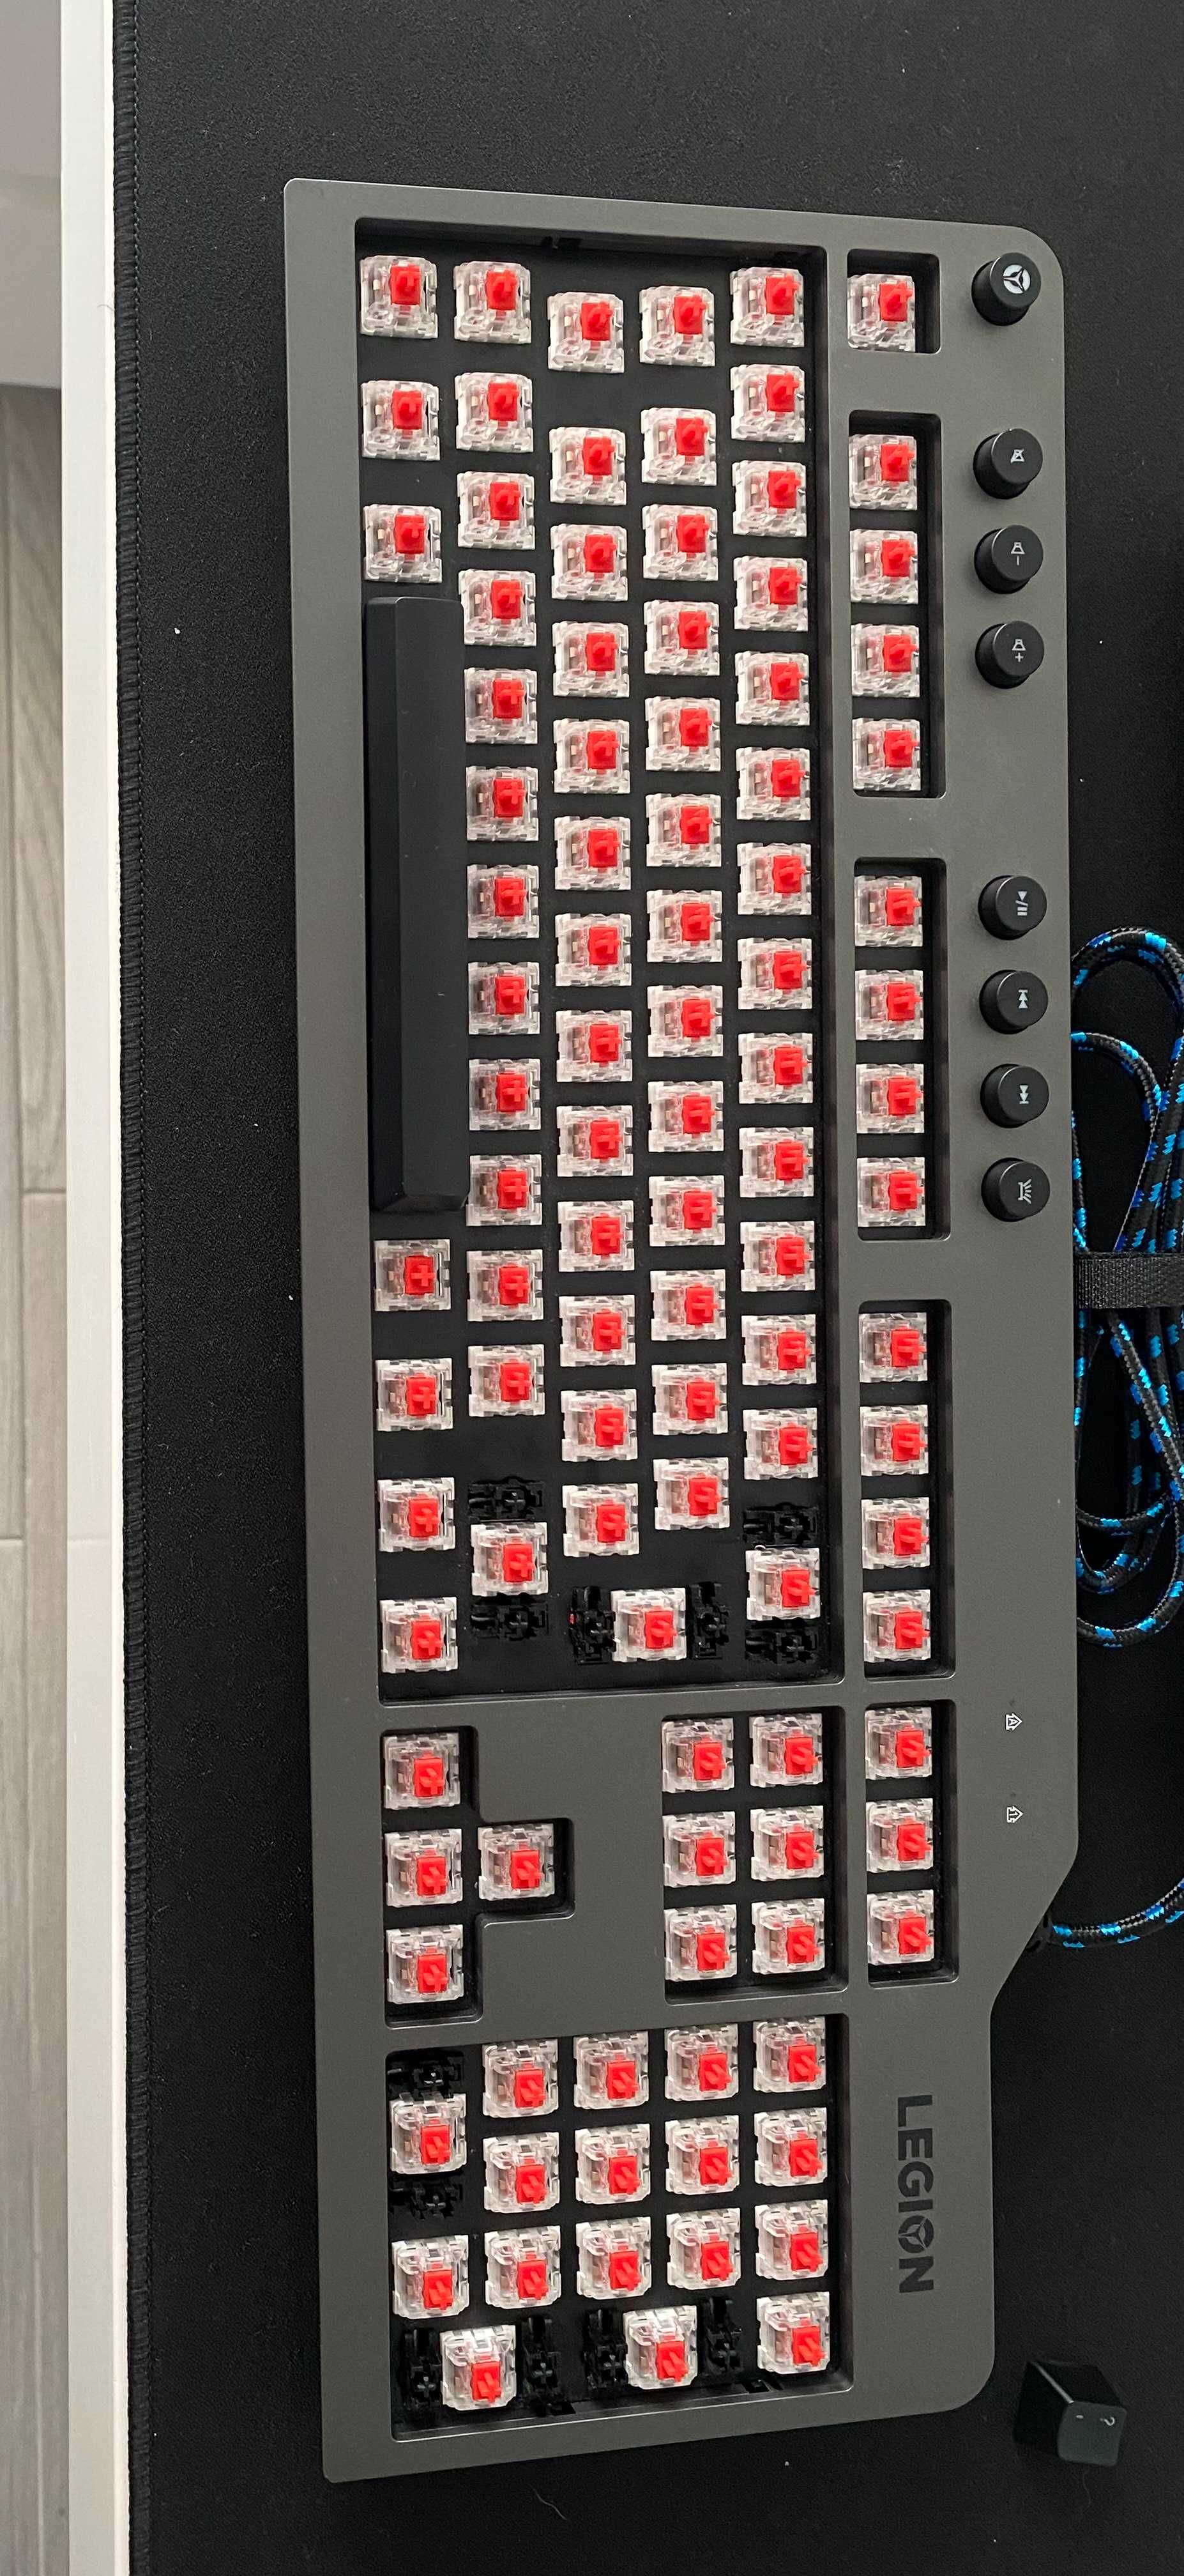 teclado lenovo legion k500 mecanico